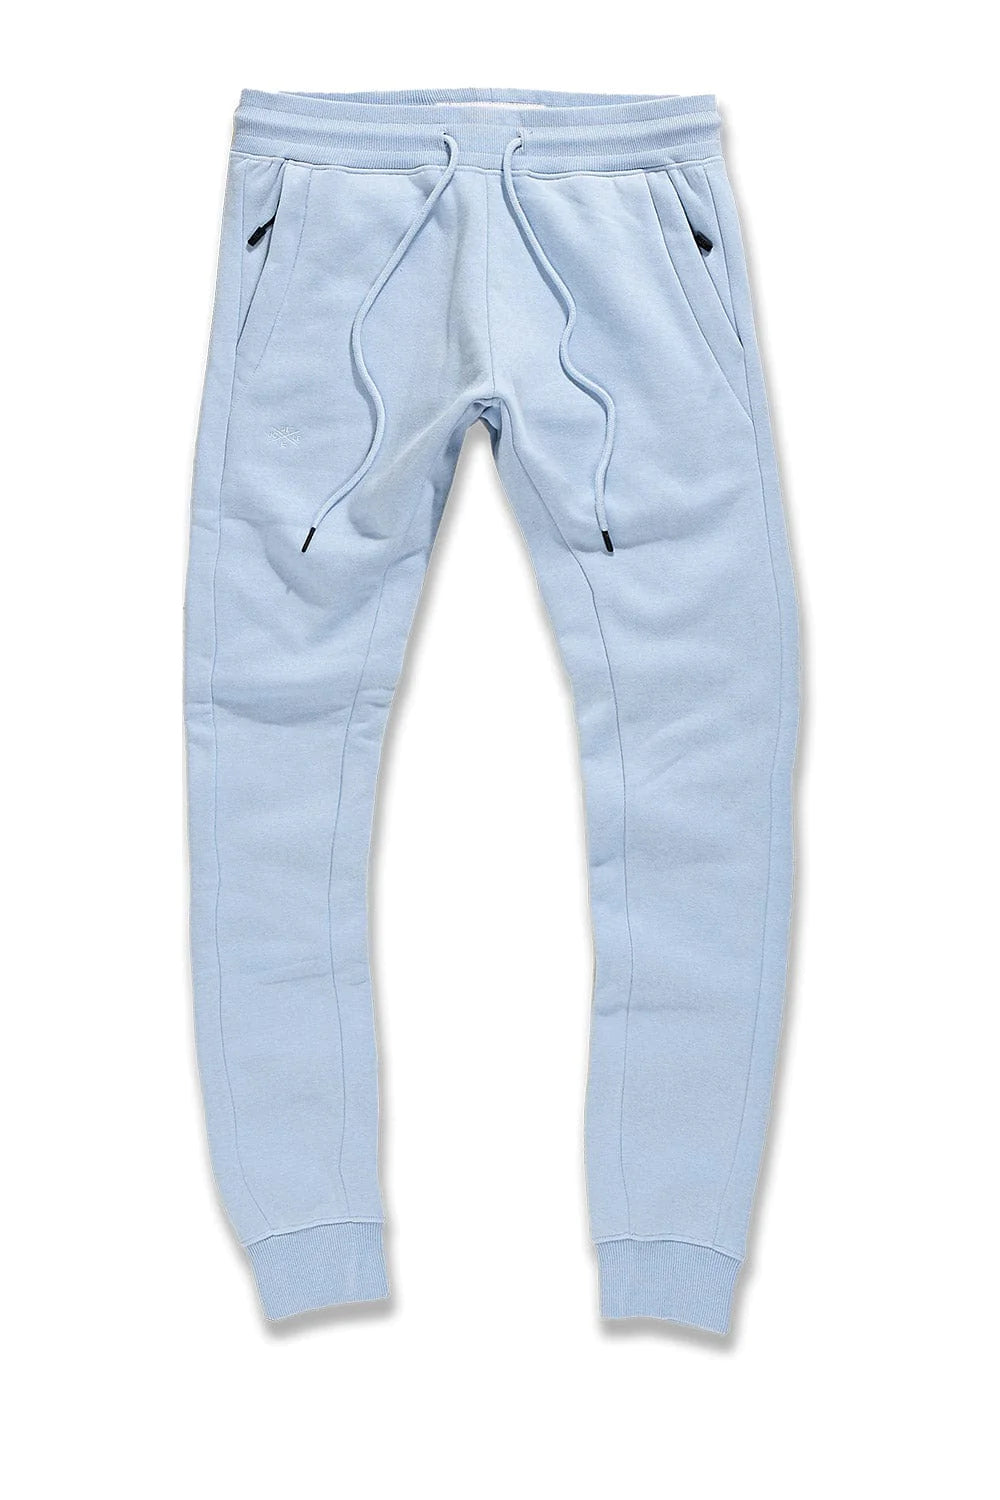 Uptown Jogger Sweatpants - Carolina Blue - 8820 – Todays Man Store